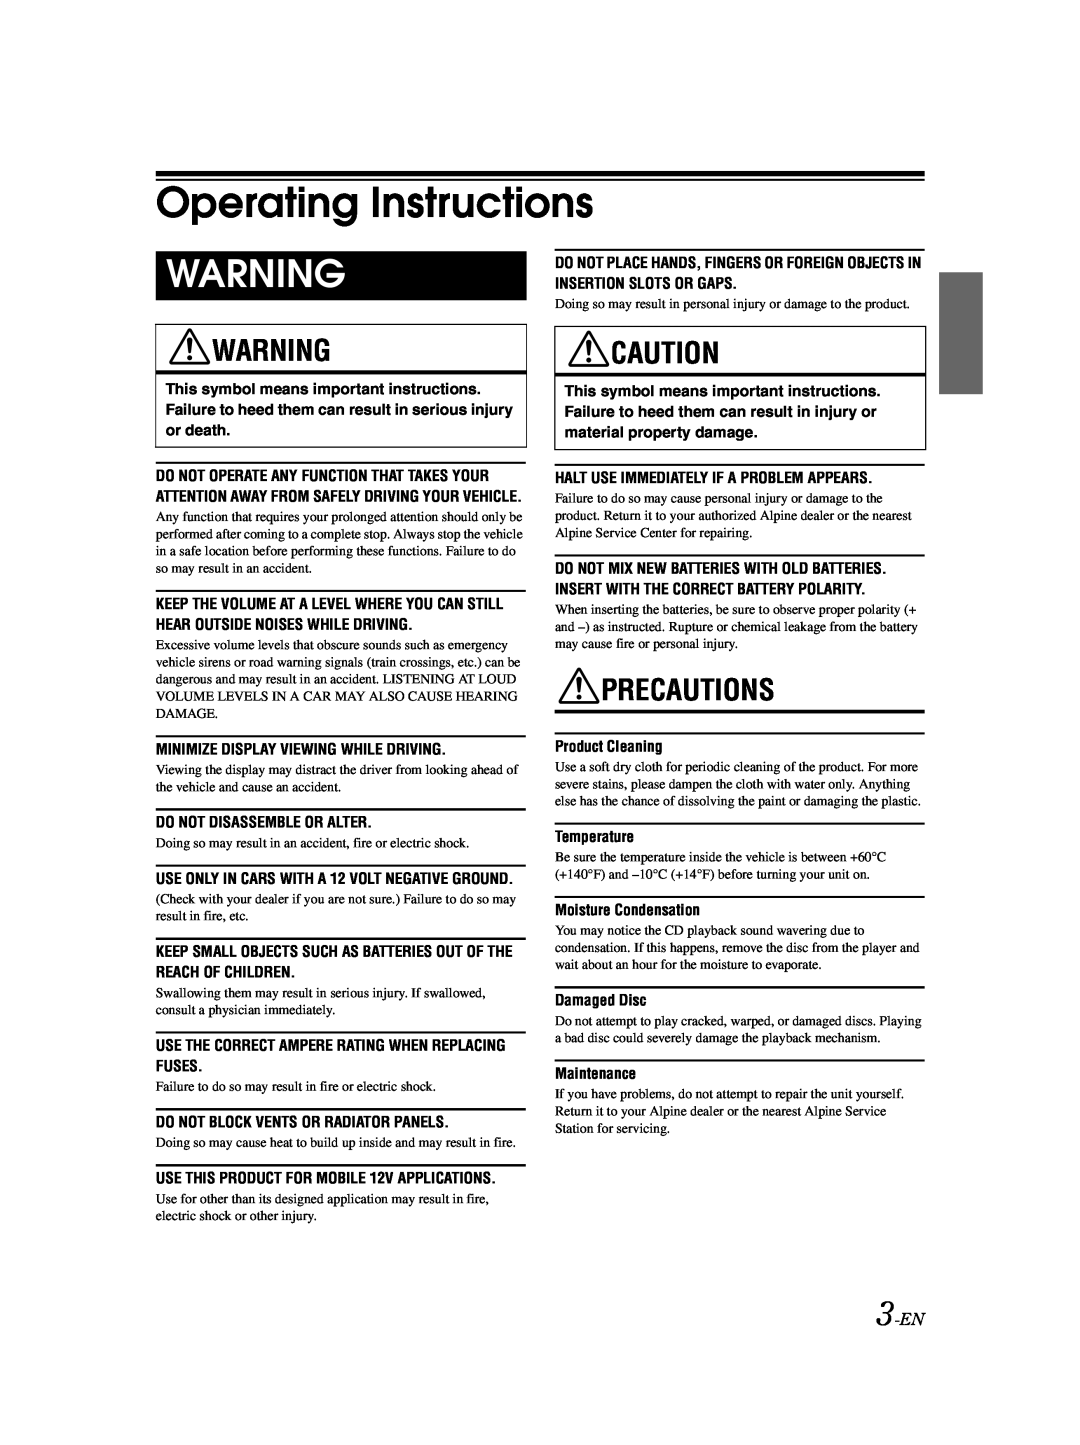 Alpine CDA-9885 owner manual Operating Instructions, Precautions, 3-EN 